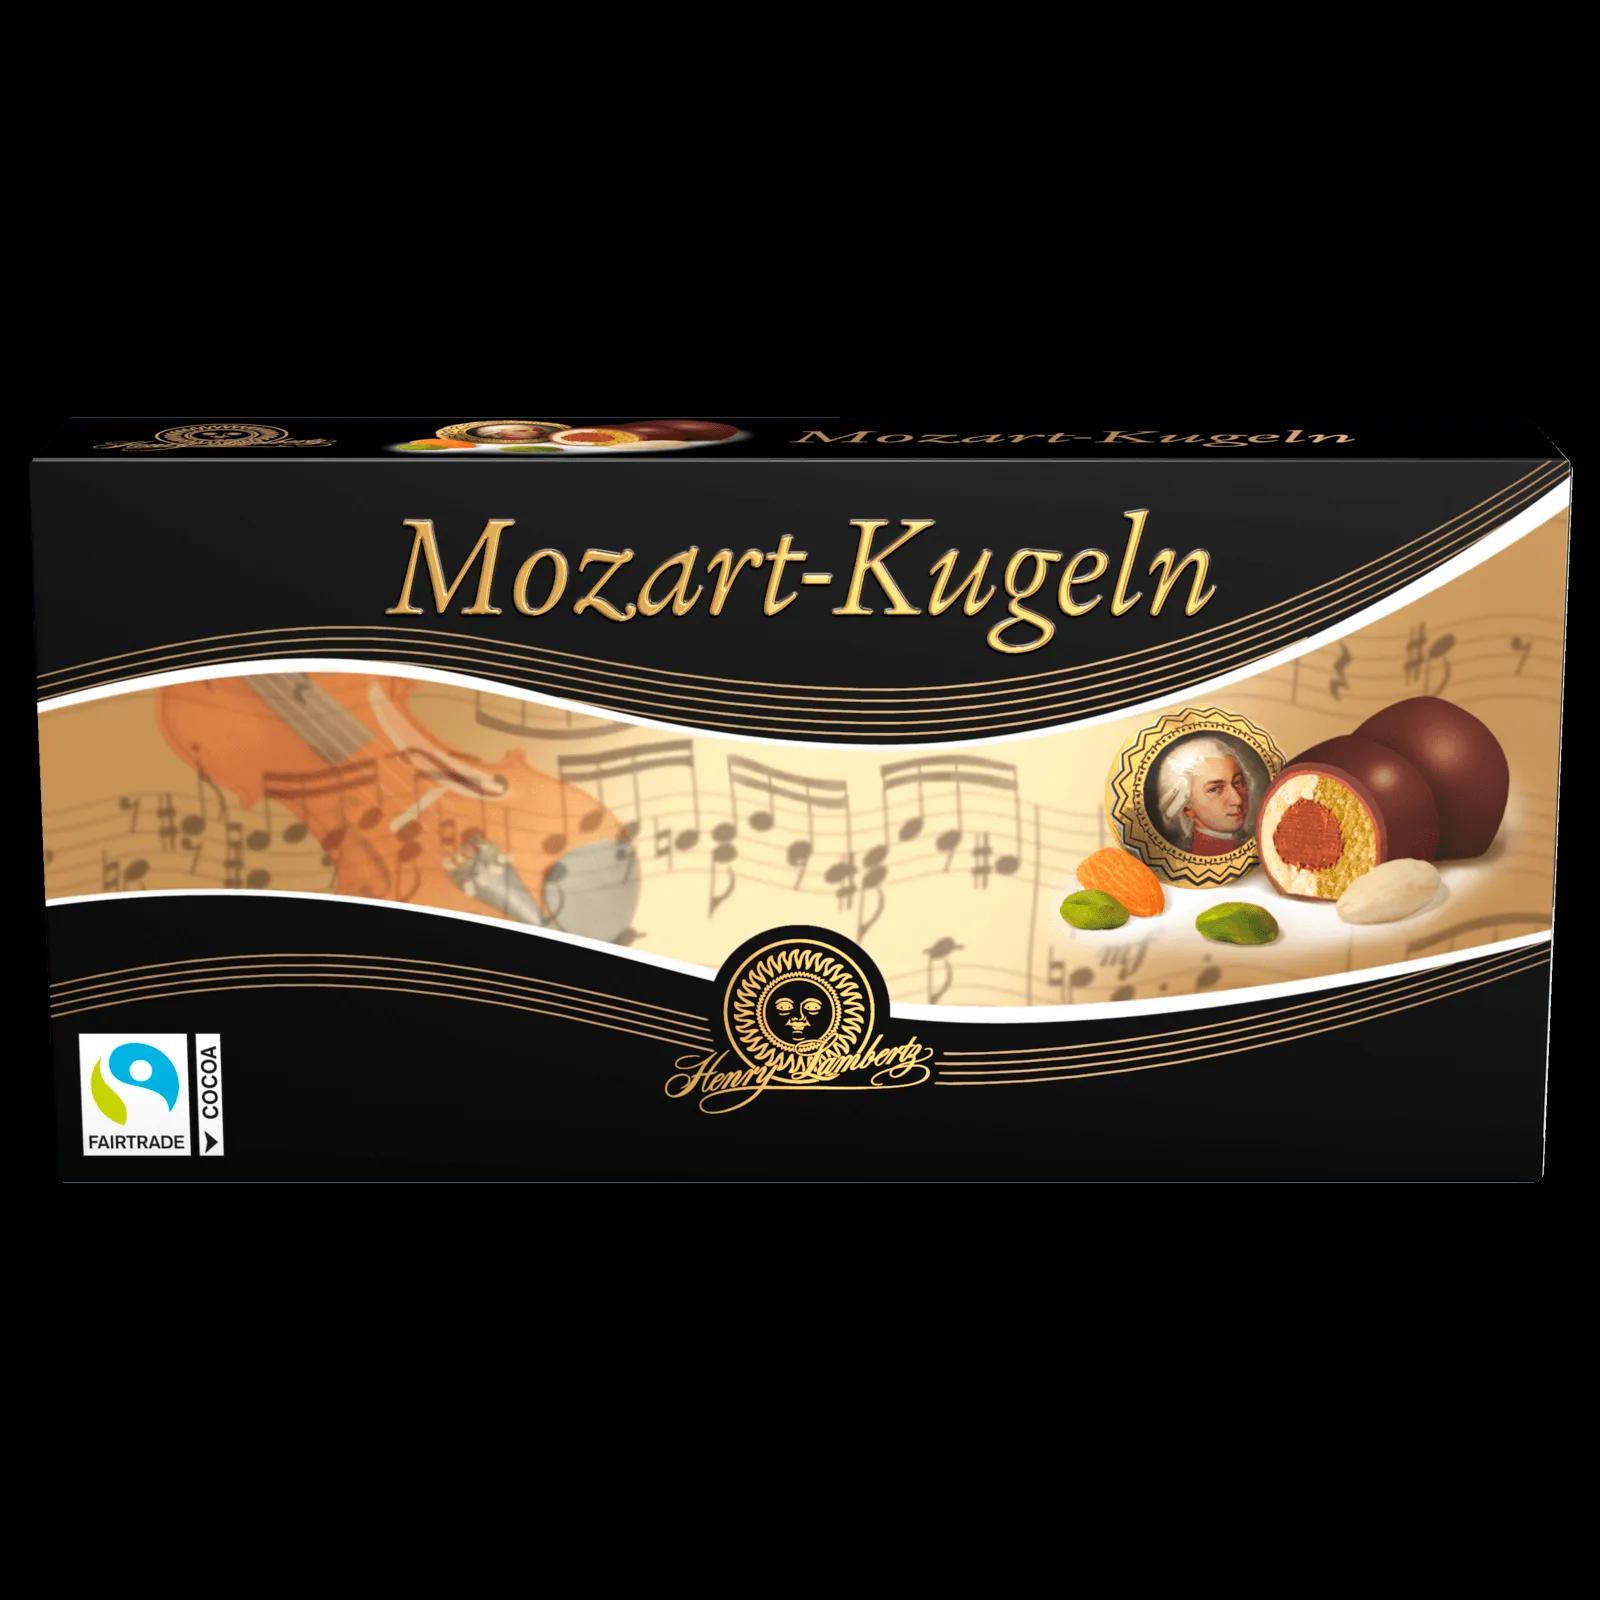 Henry Lambertz Mozart-Kugeln 200g bei REWE online bestellen!